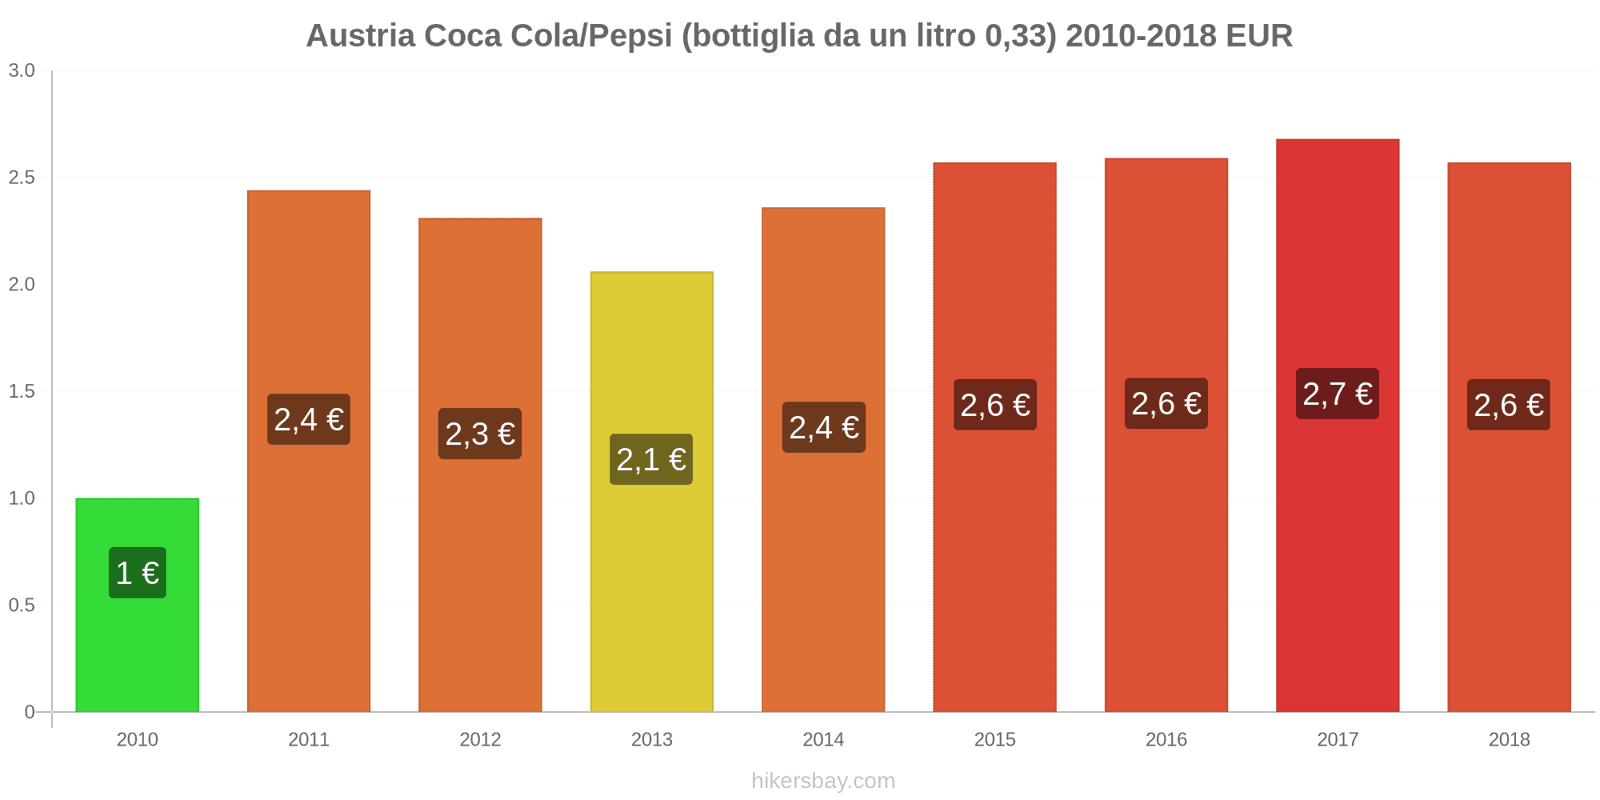 Austria cambi di prezzo Coca-Cola/Pepsi (bottiglia da 0.33 litri) hikersbay.com